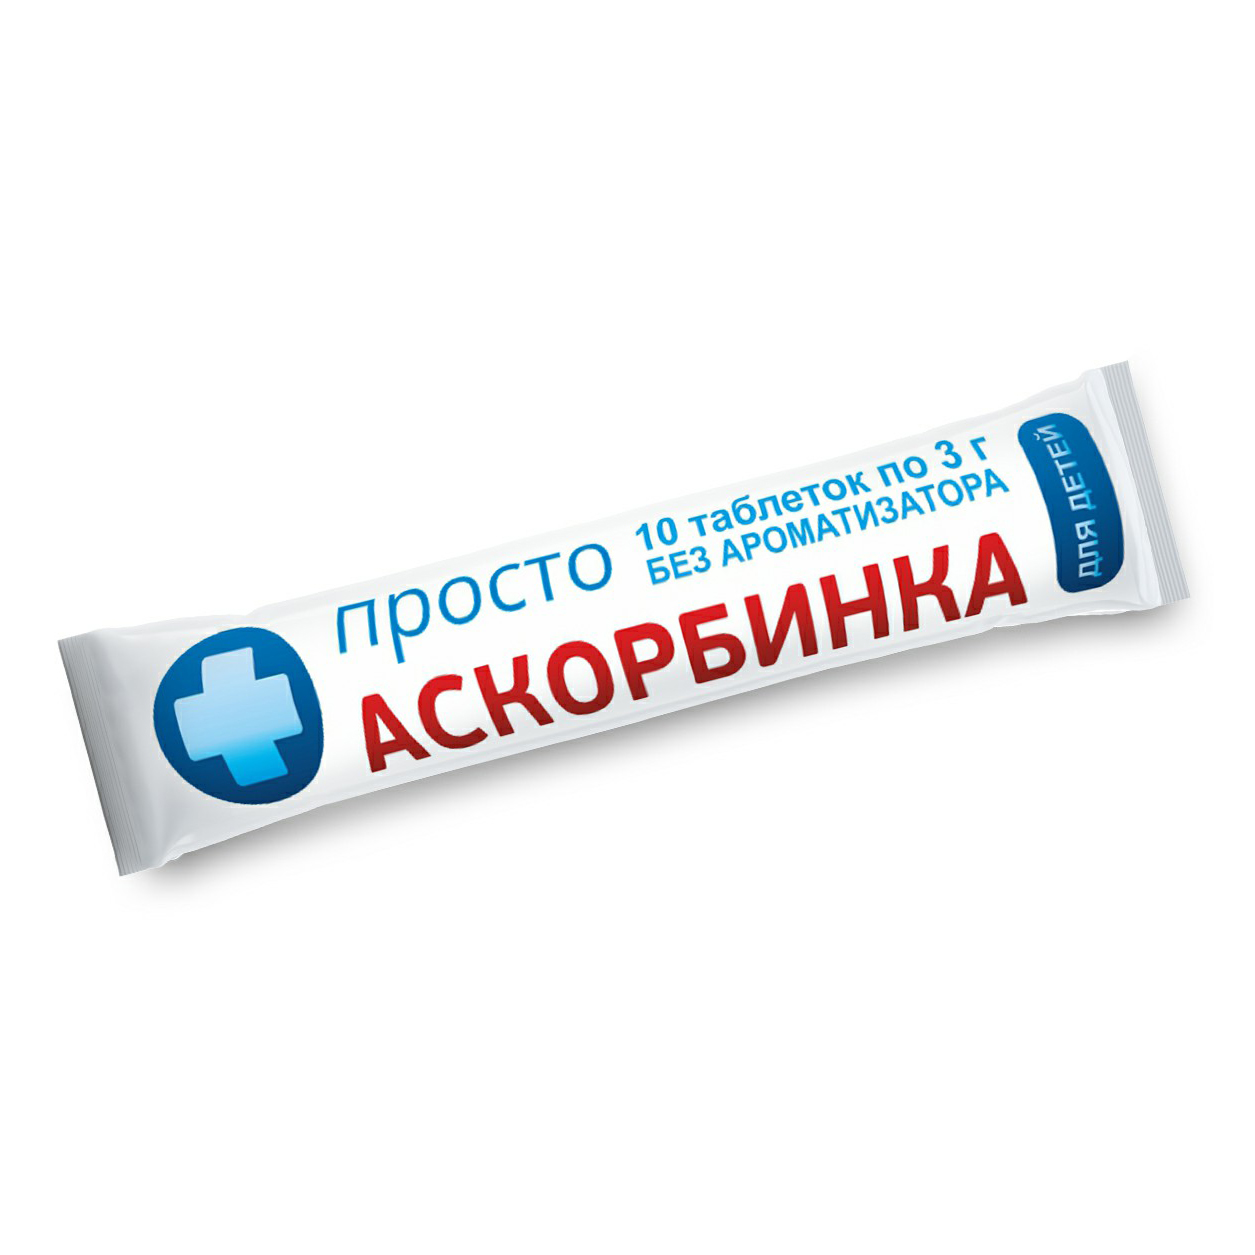 Купить Аскорбинка для детей таблетки 3 г 10 шт., Сибирское здоровье